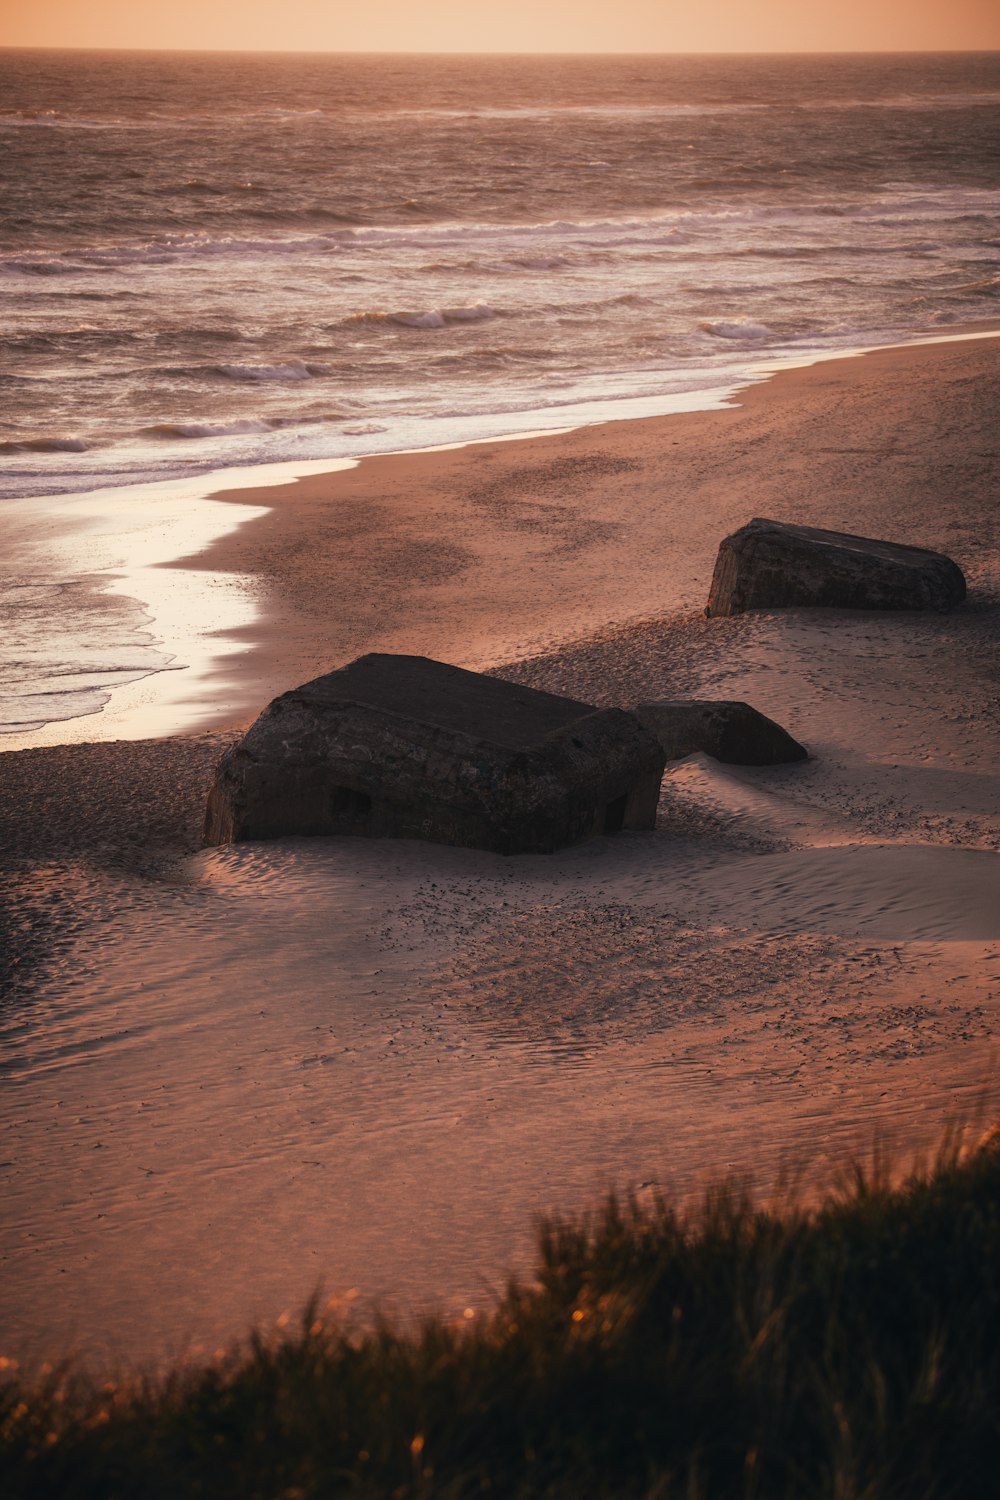 모래 사장 위에 앉아있는 두 개의 큰 바위